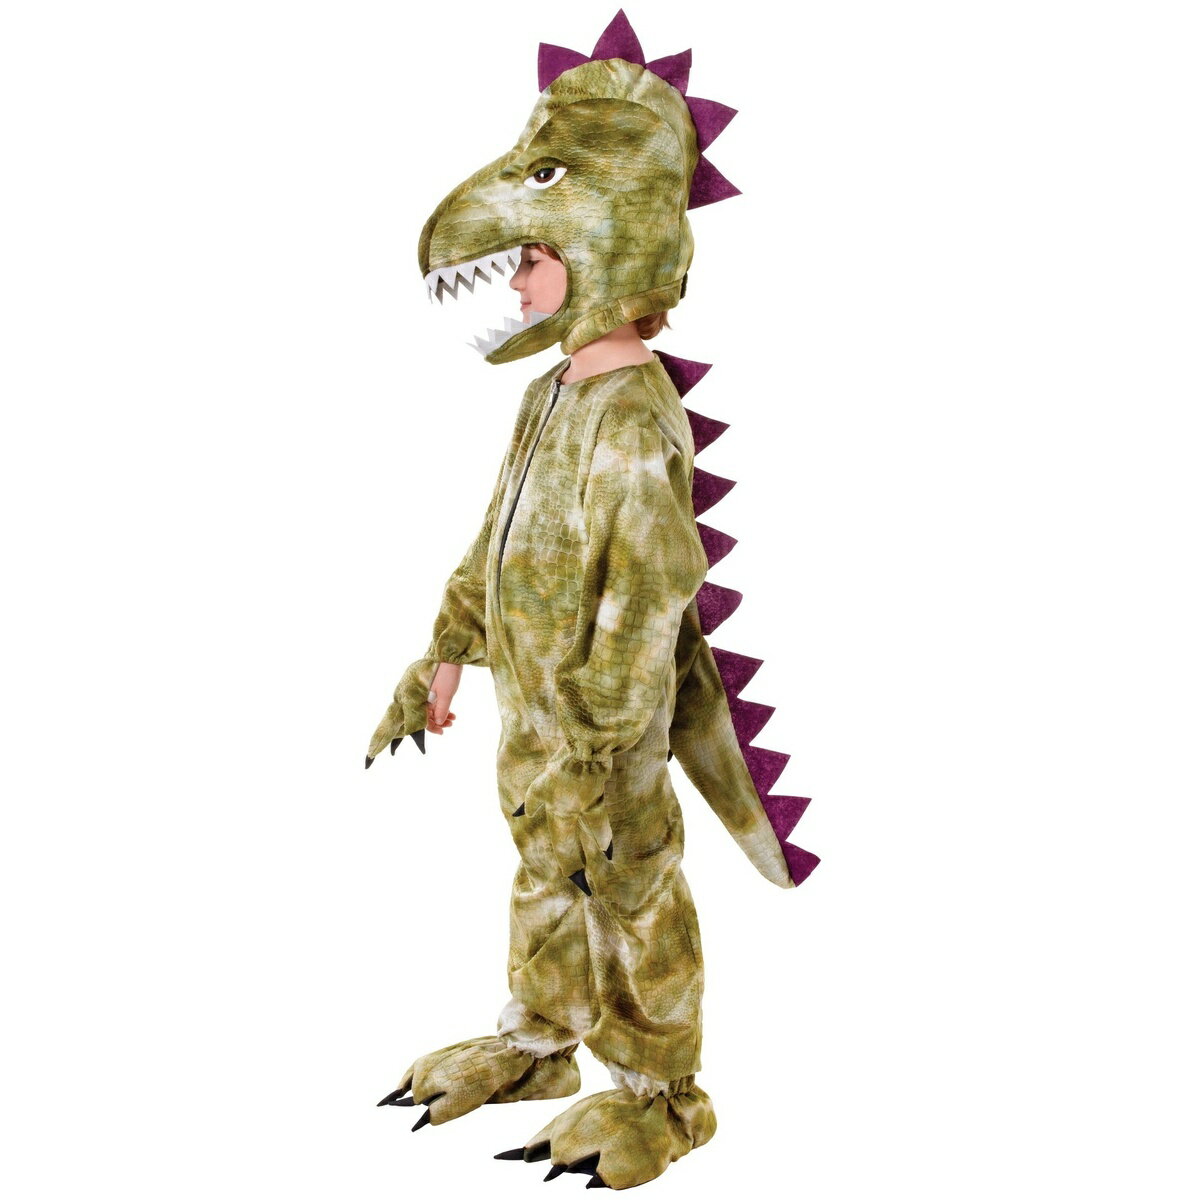 商品説明・ 子供用恐竜のコスチューム。・ セット内容: オールインワンx1、被り物x1。・ サイズガイド(身長): M(128cm)、L(140cm)。 カラーグリーン